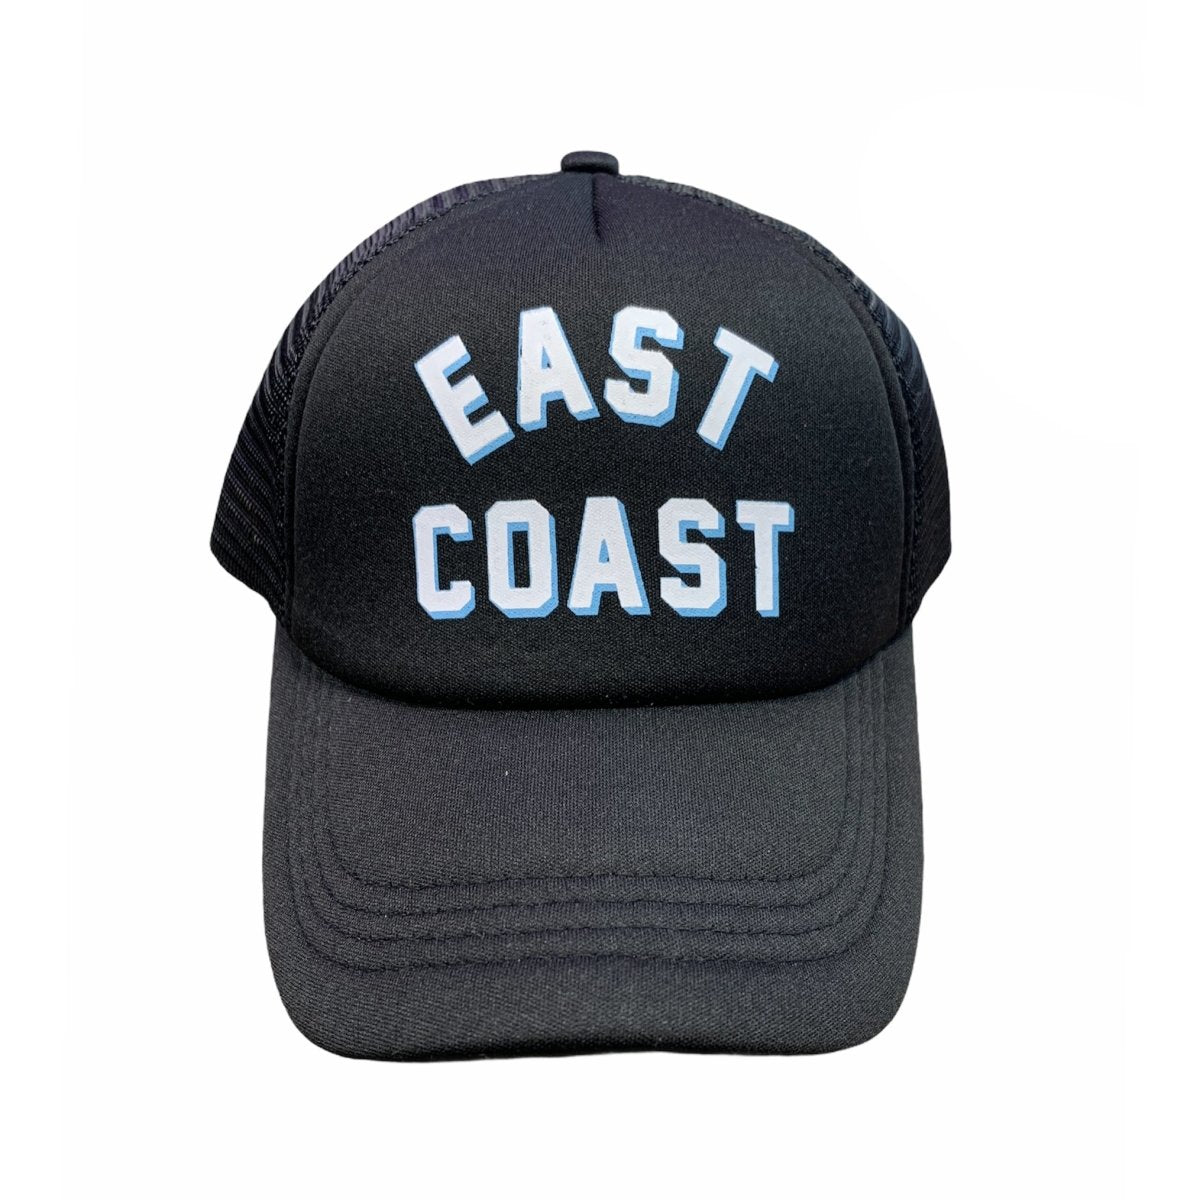 EAST COAST HAT - HATS